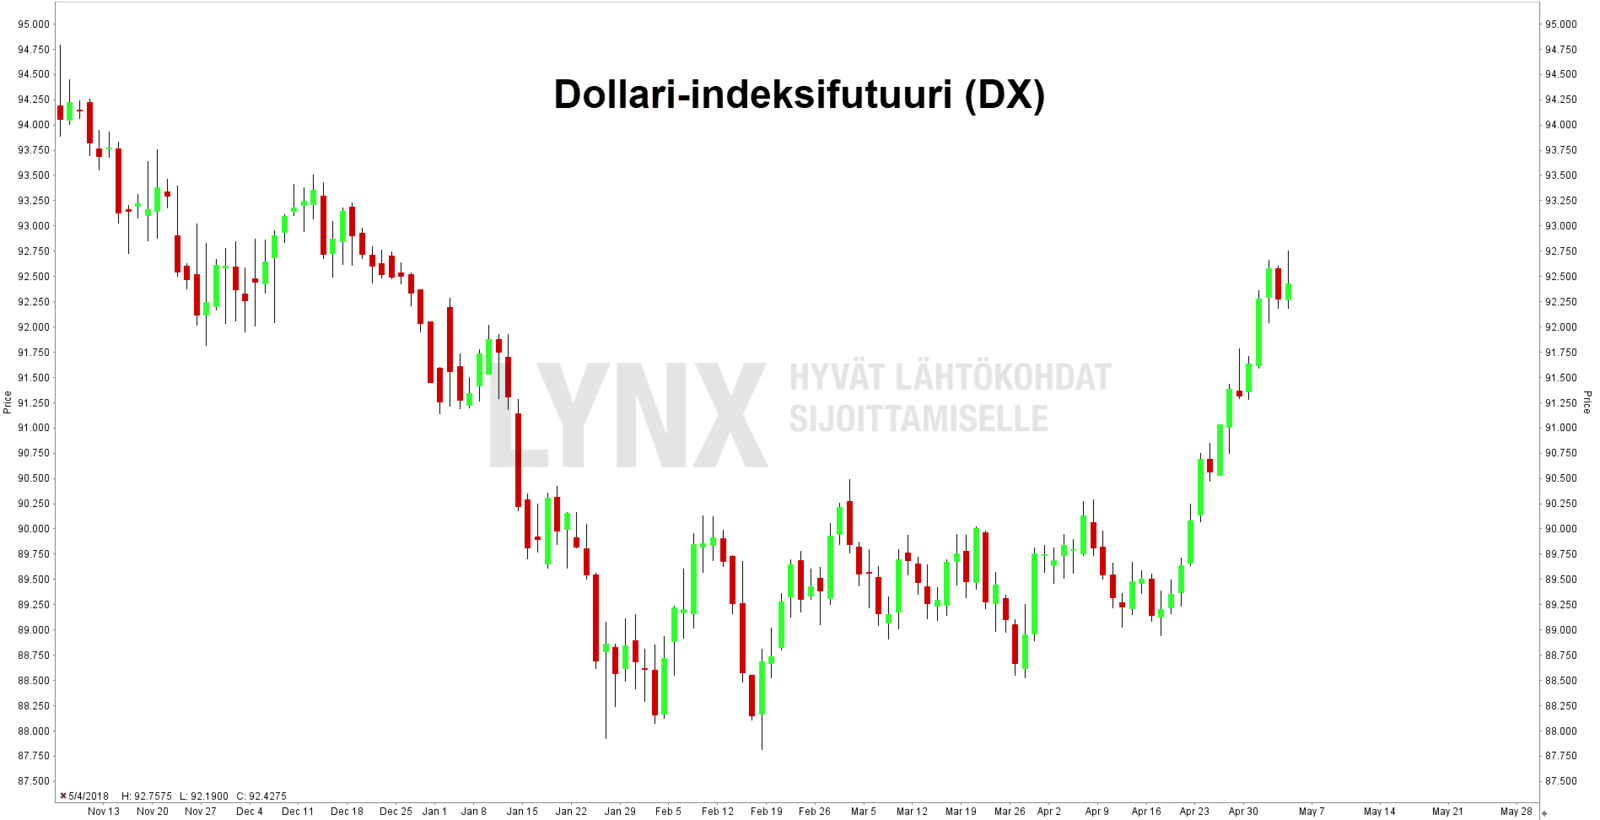 Dollari-indeksifutuuri